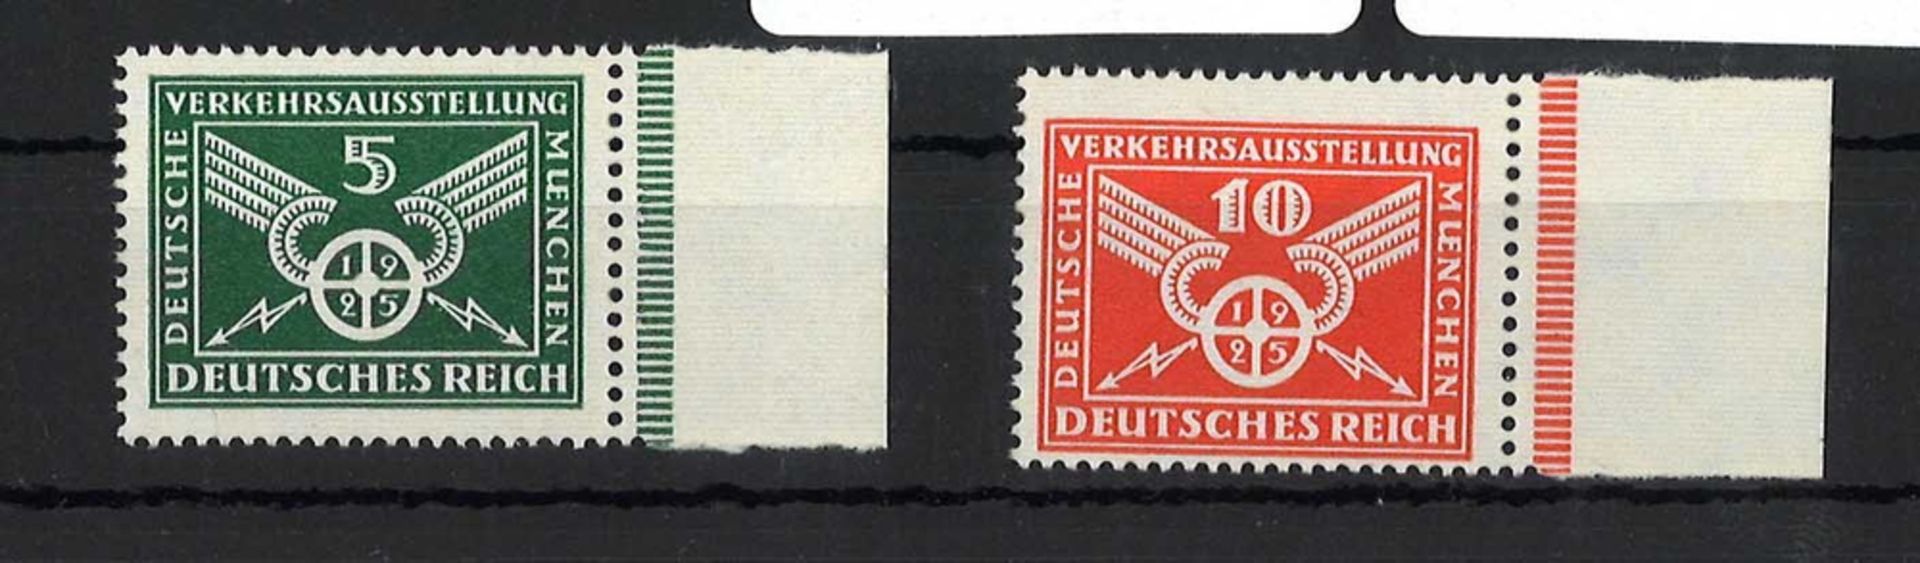 Deutsches Reich 1925 MiNr. 370/71 mit Seitenrand, postfrisch